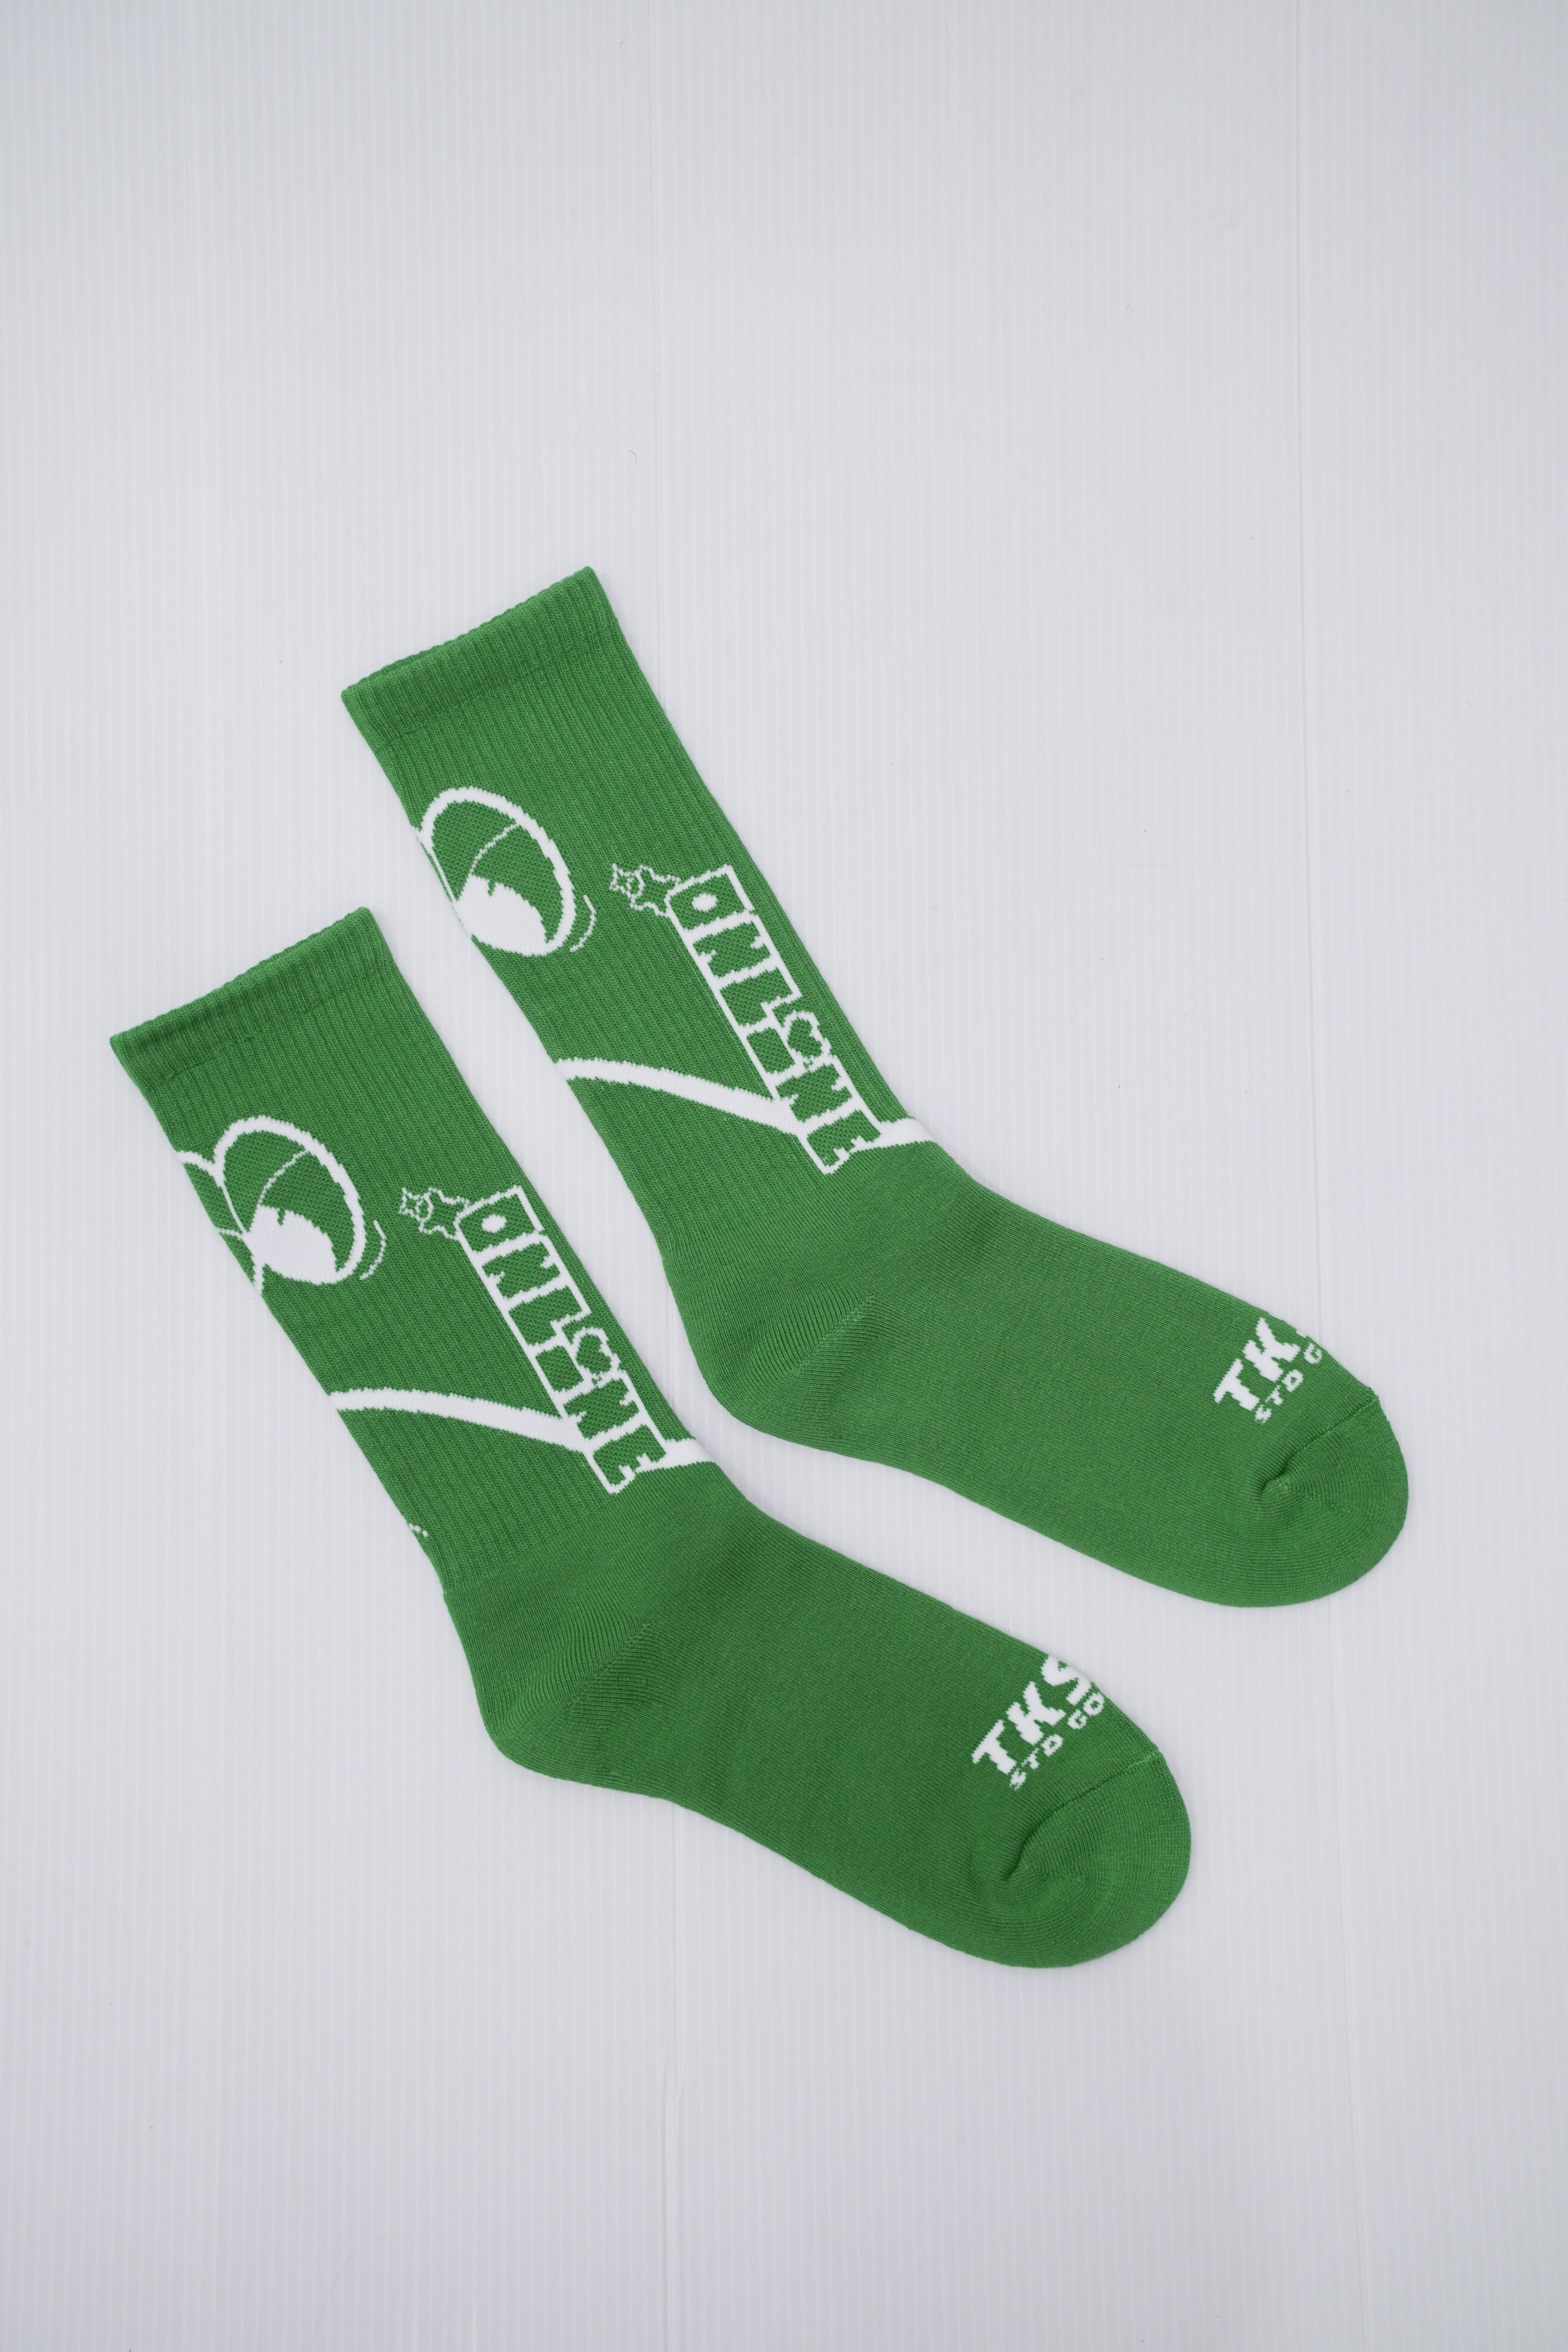 TKSB - Green Dataran Socks